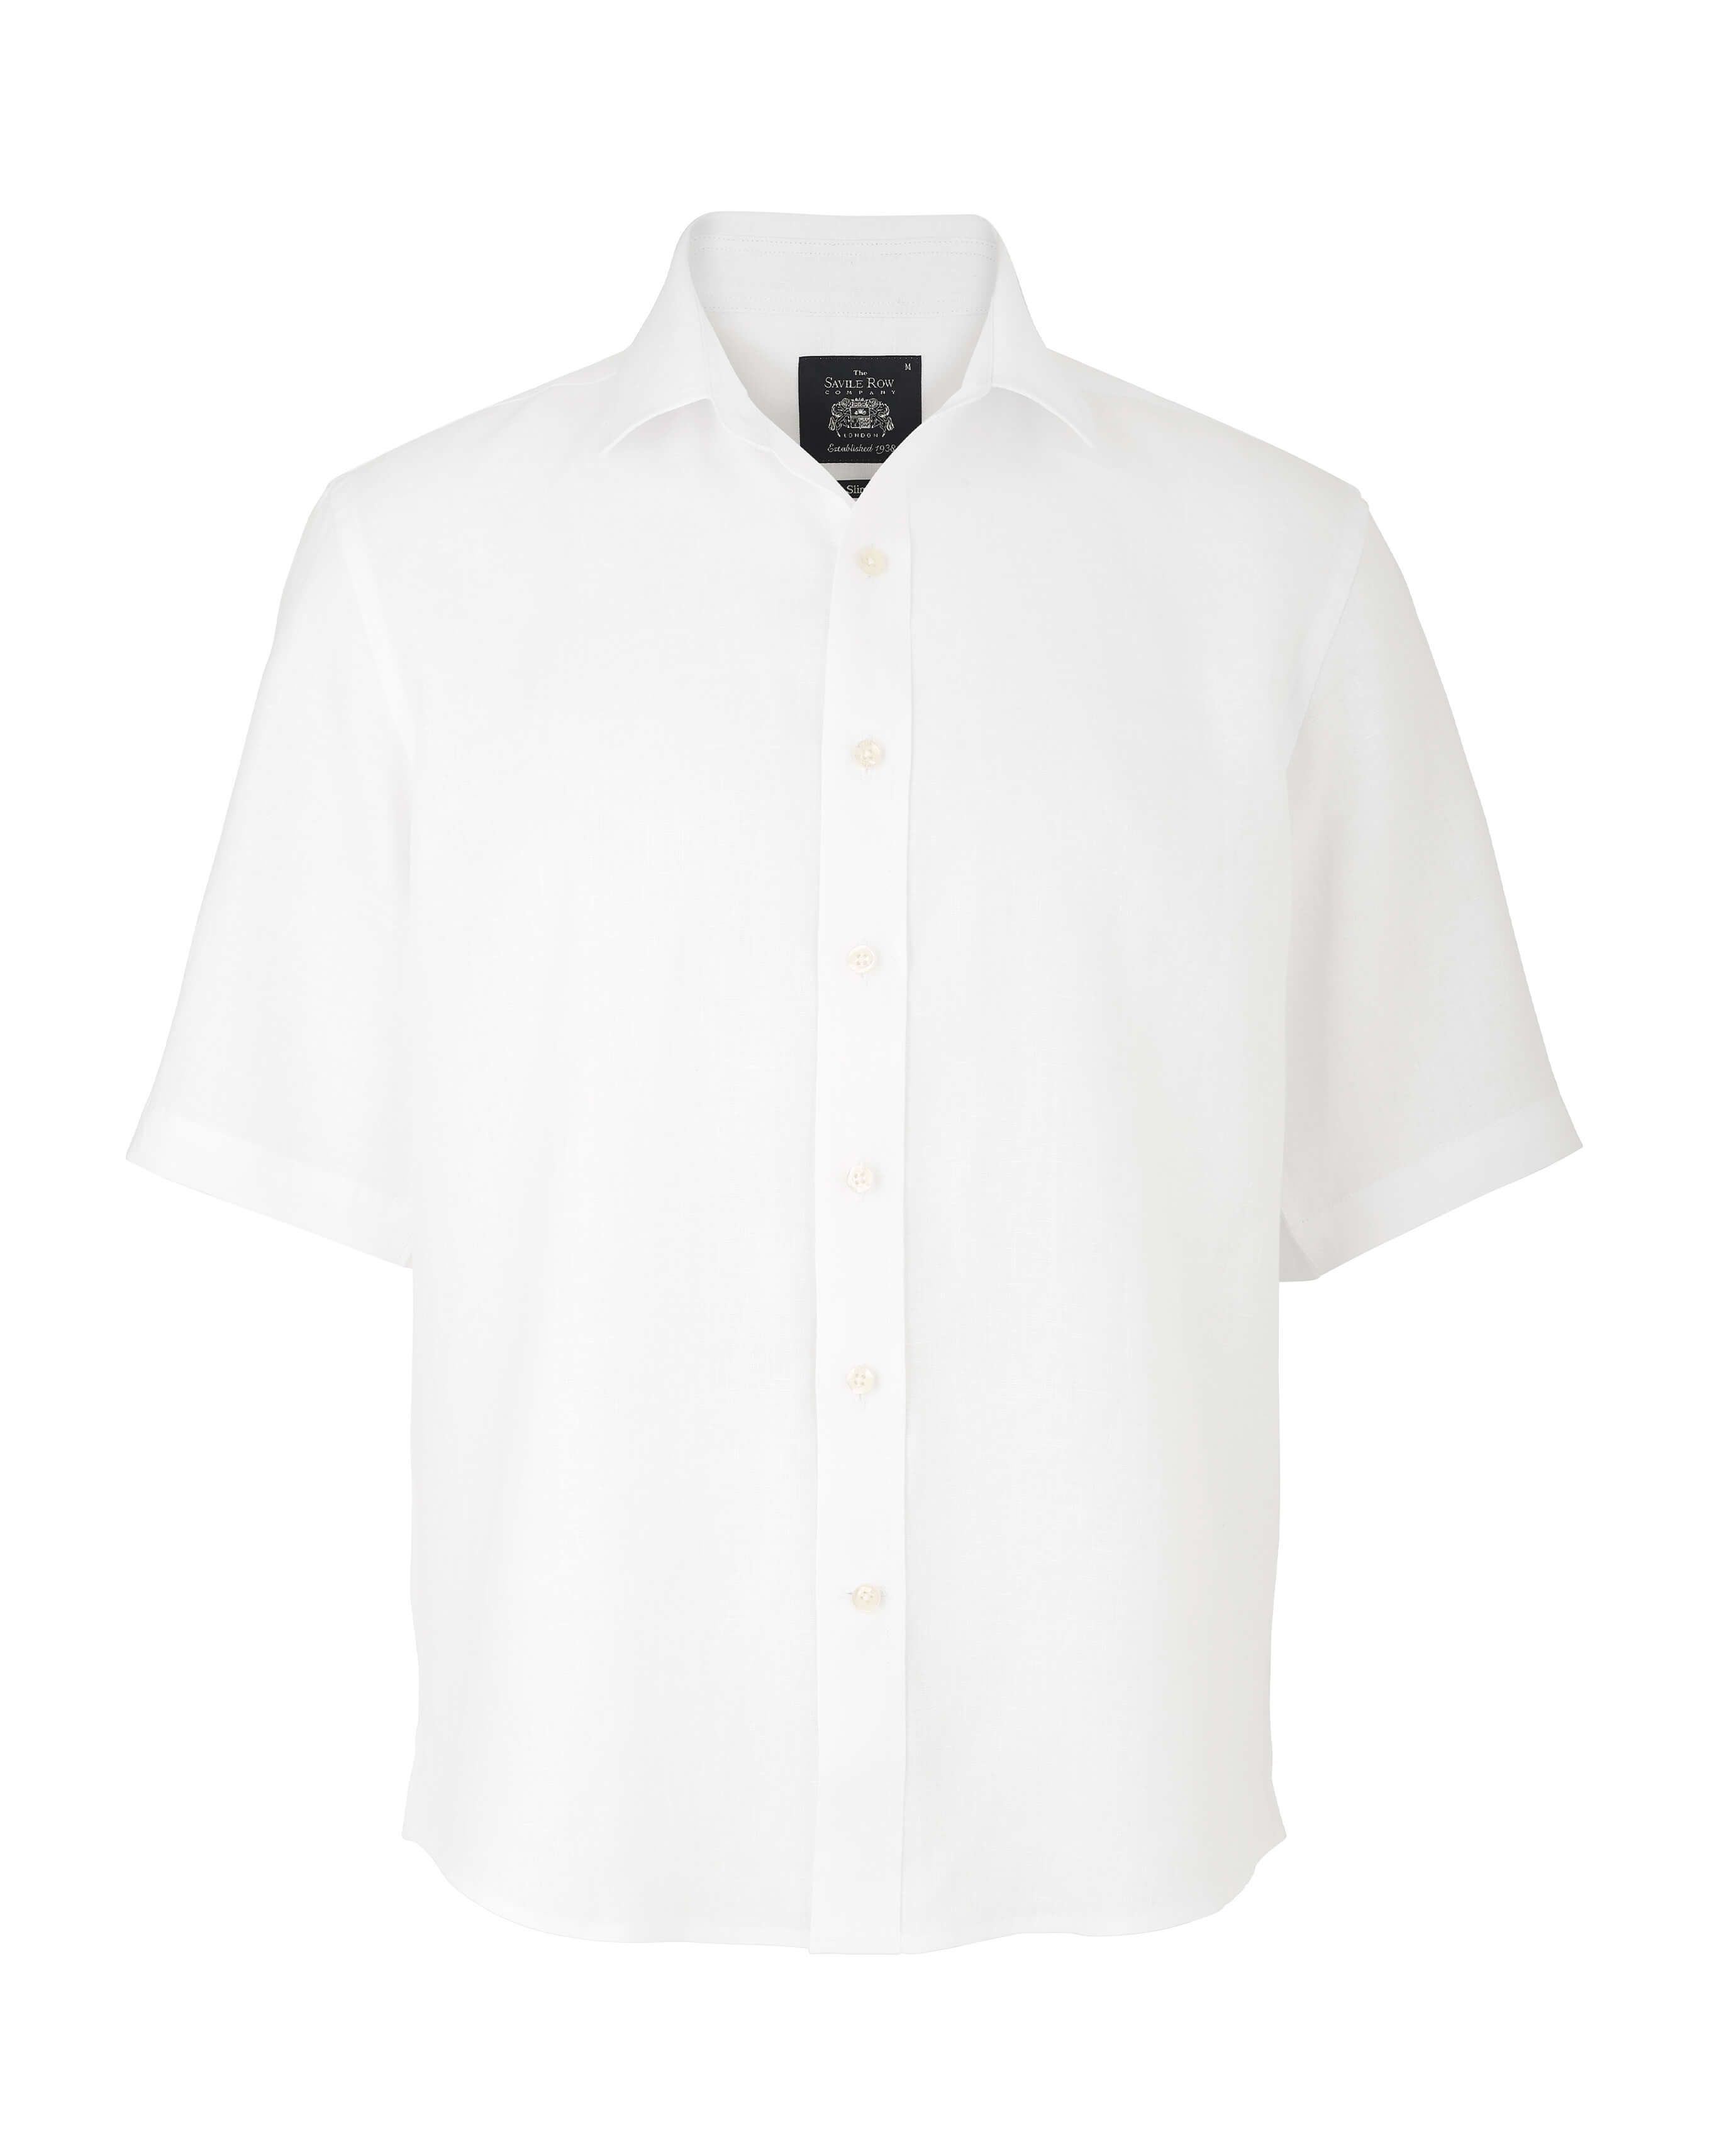 Men’s white 100% linen short sleeve shirt in shorter length | Savile Row Co